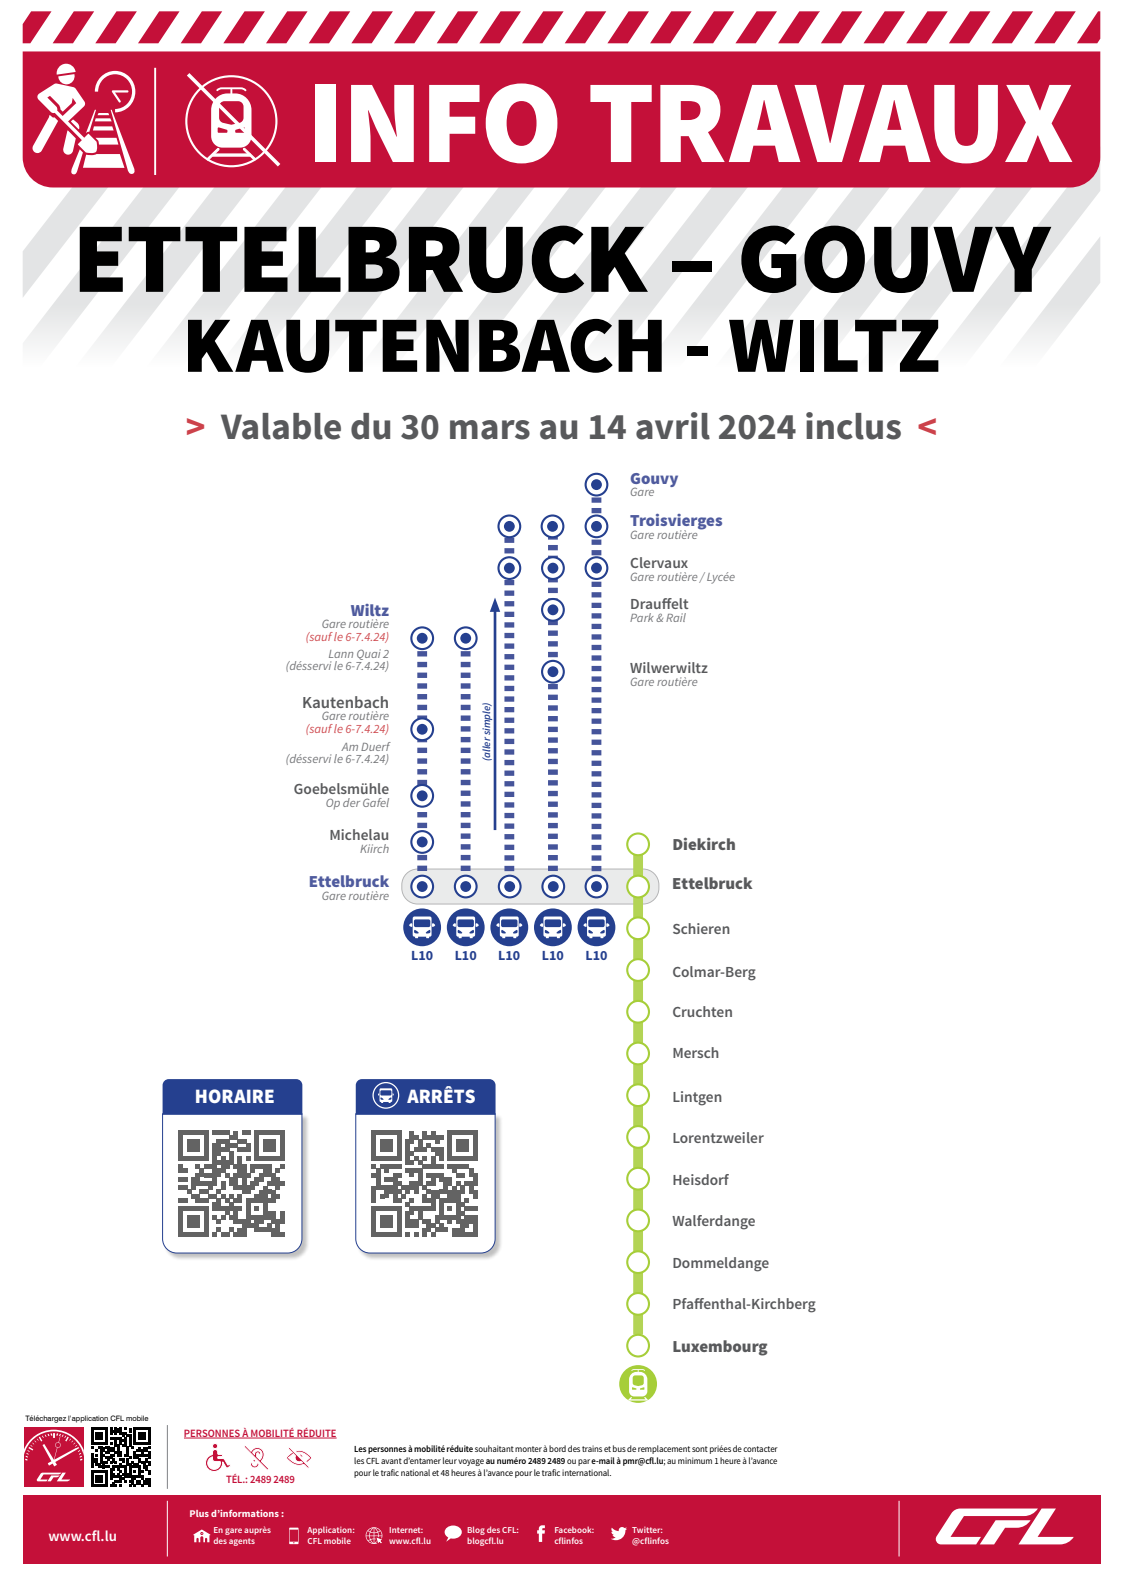 Info CFL - Travaux sur la ligne Ettelbruck-Gouvy et Kautenbach - Wiltz du 30 mars au 14 avril 2024_png